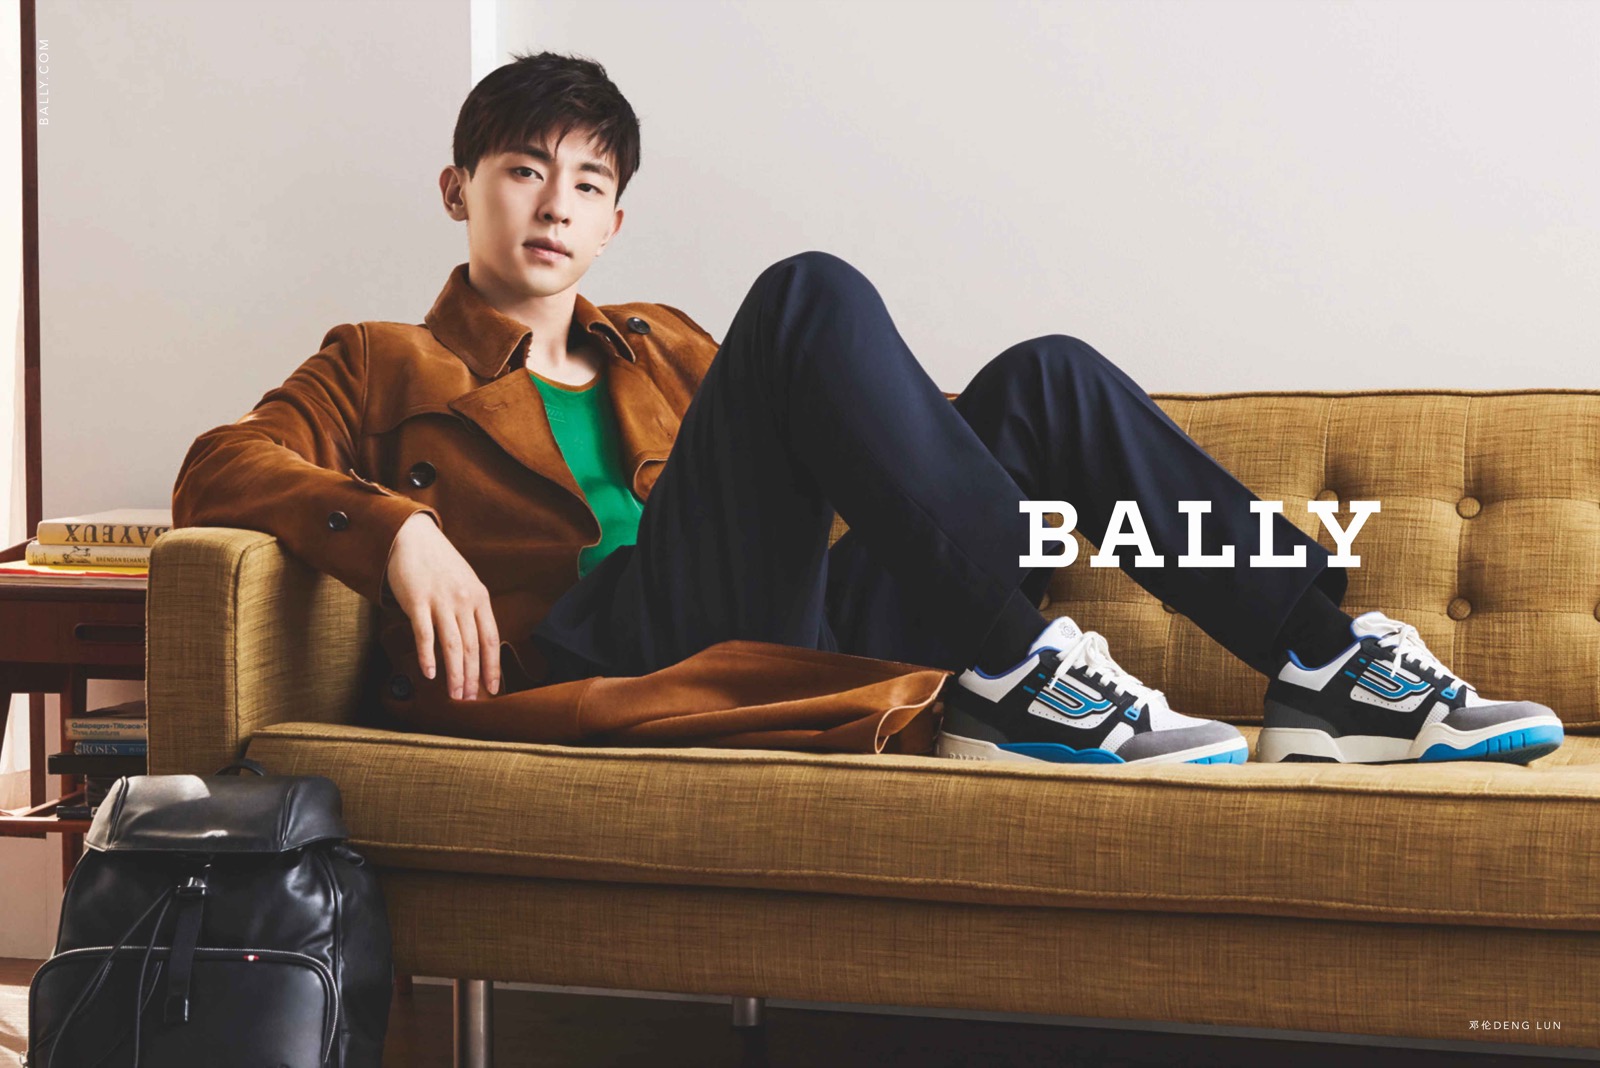 BALLY 宣布中国演员邓伦担任 2019 亚太区品牌代言人